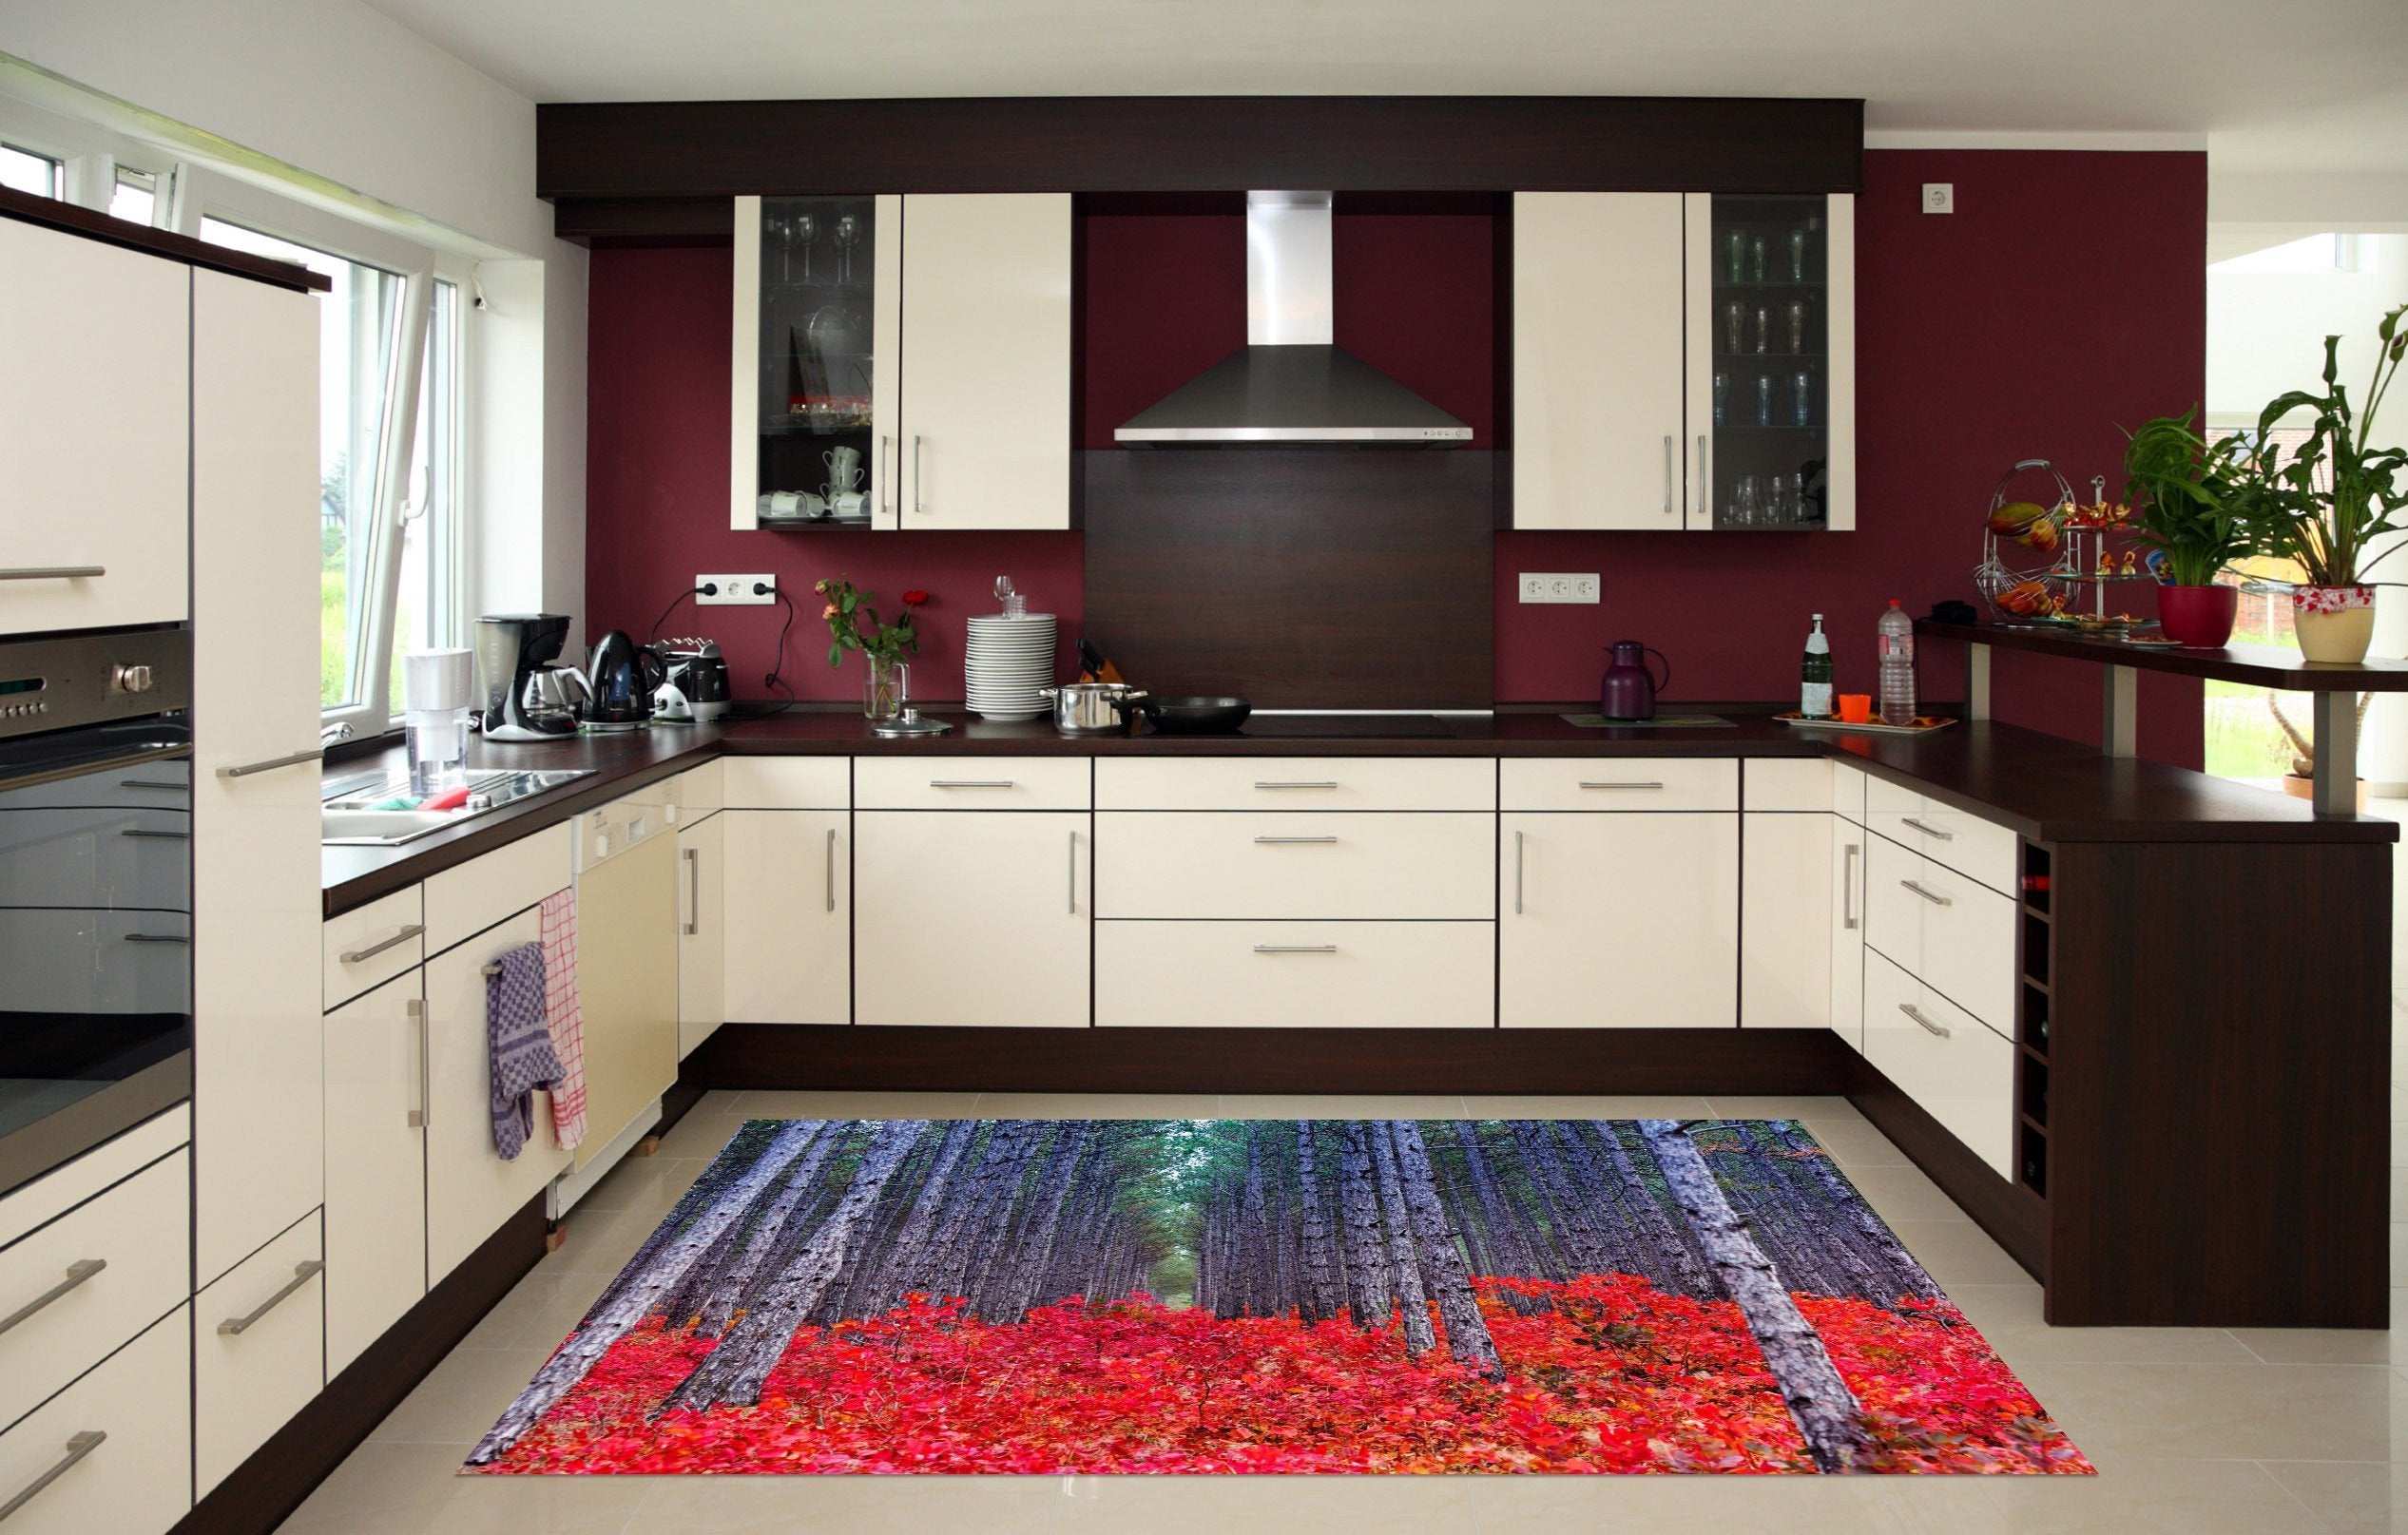 3D Forest Plants 601 Kitchen Mat Floor Mural Wallpaper AJ Wallpaper 